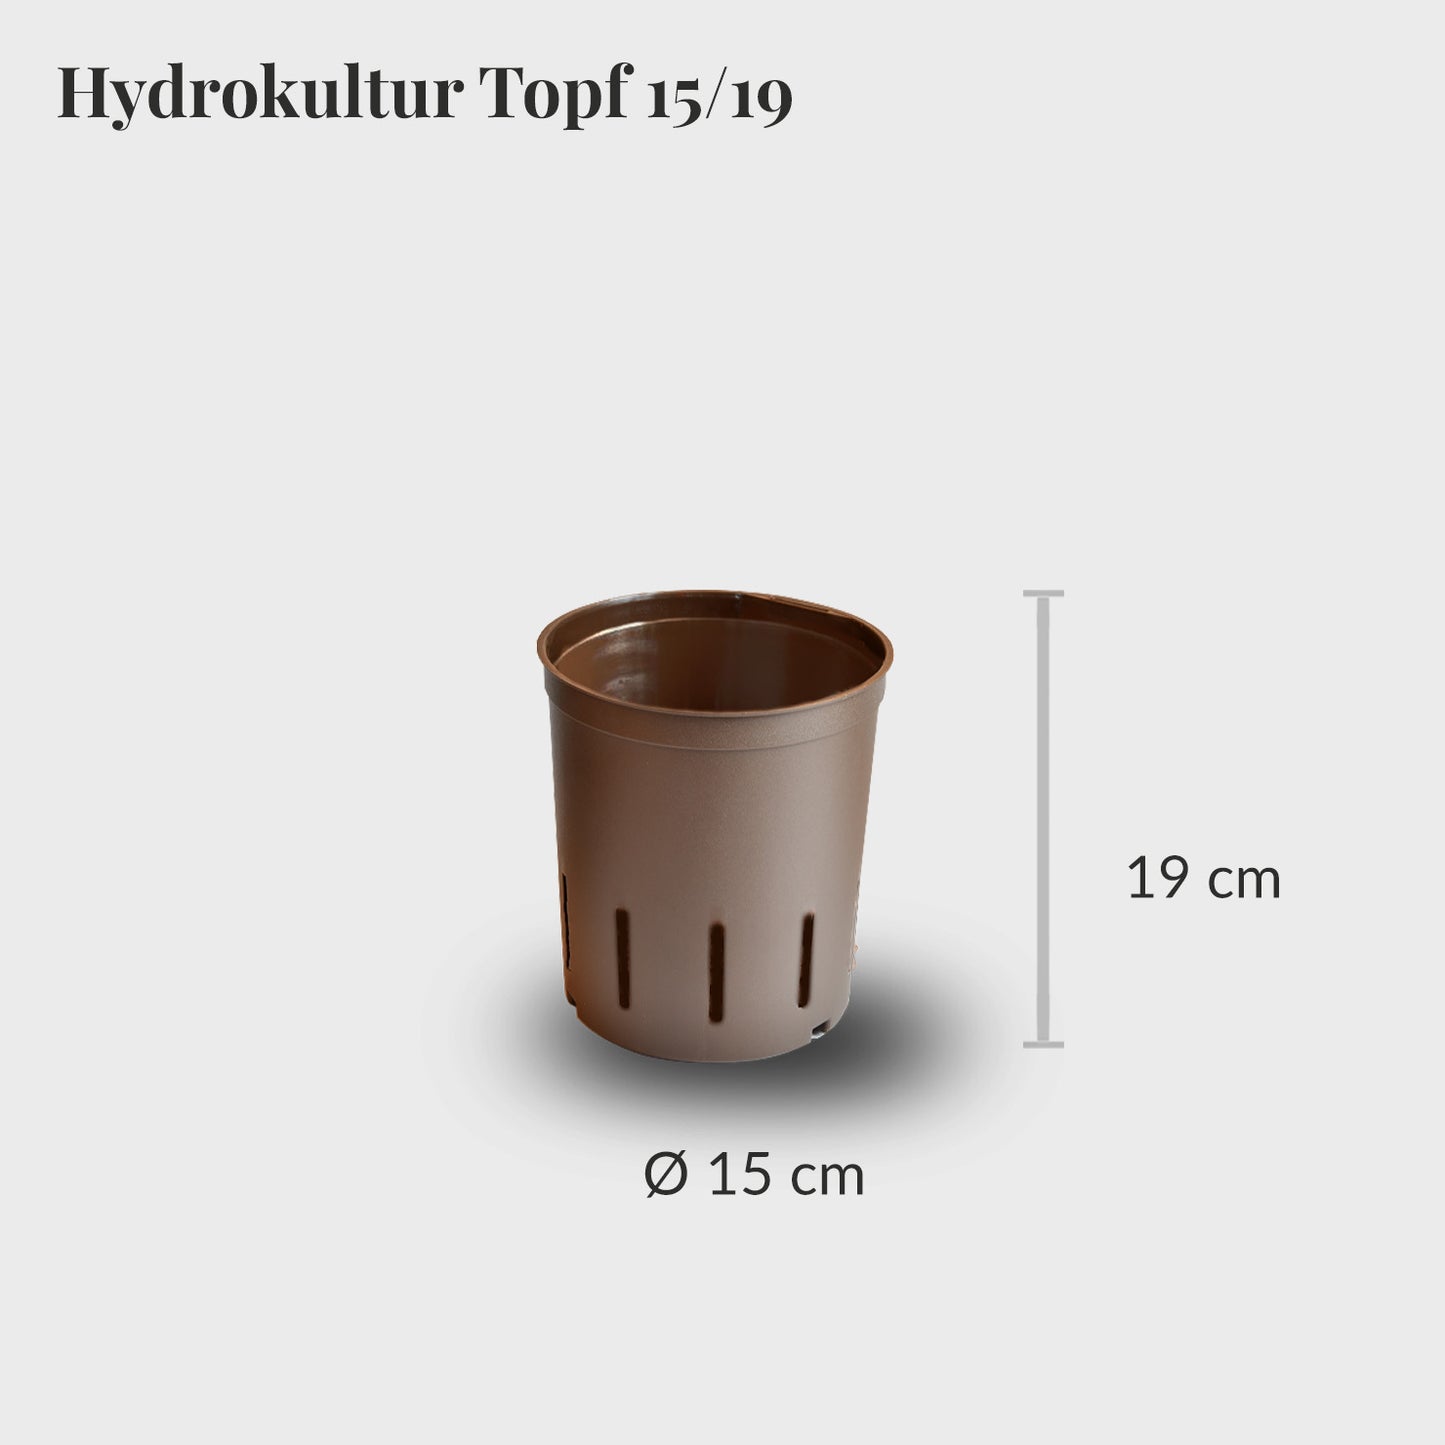 Hydrokultur Topf 15/19